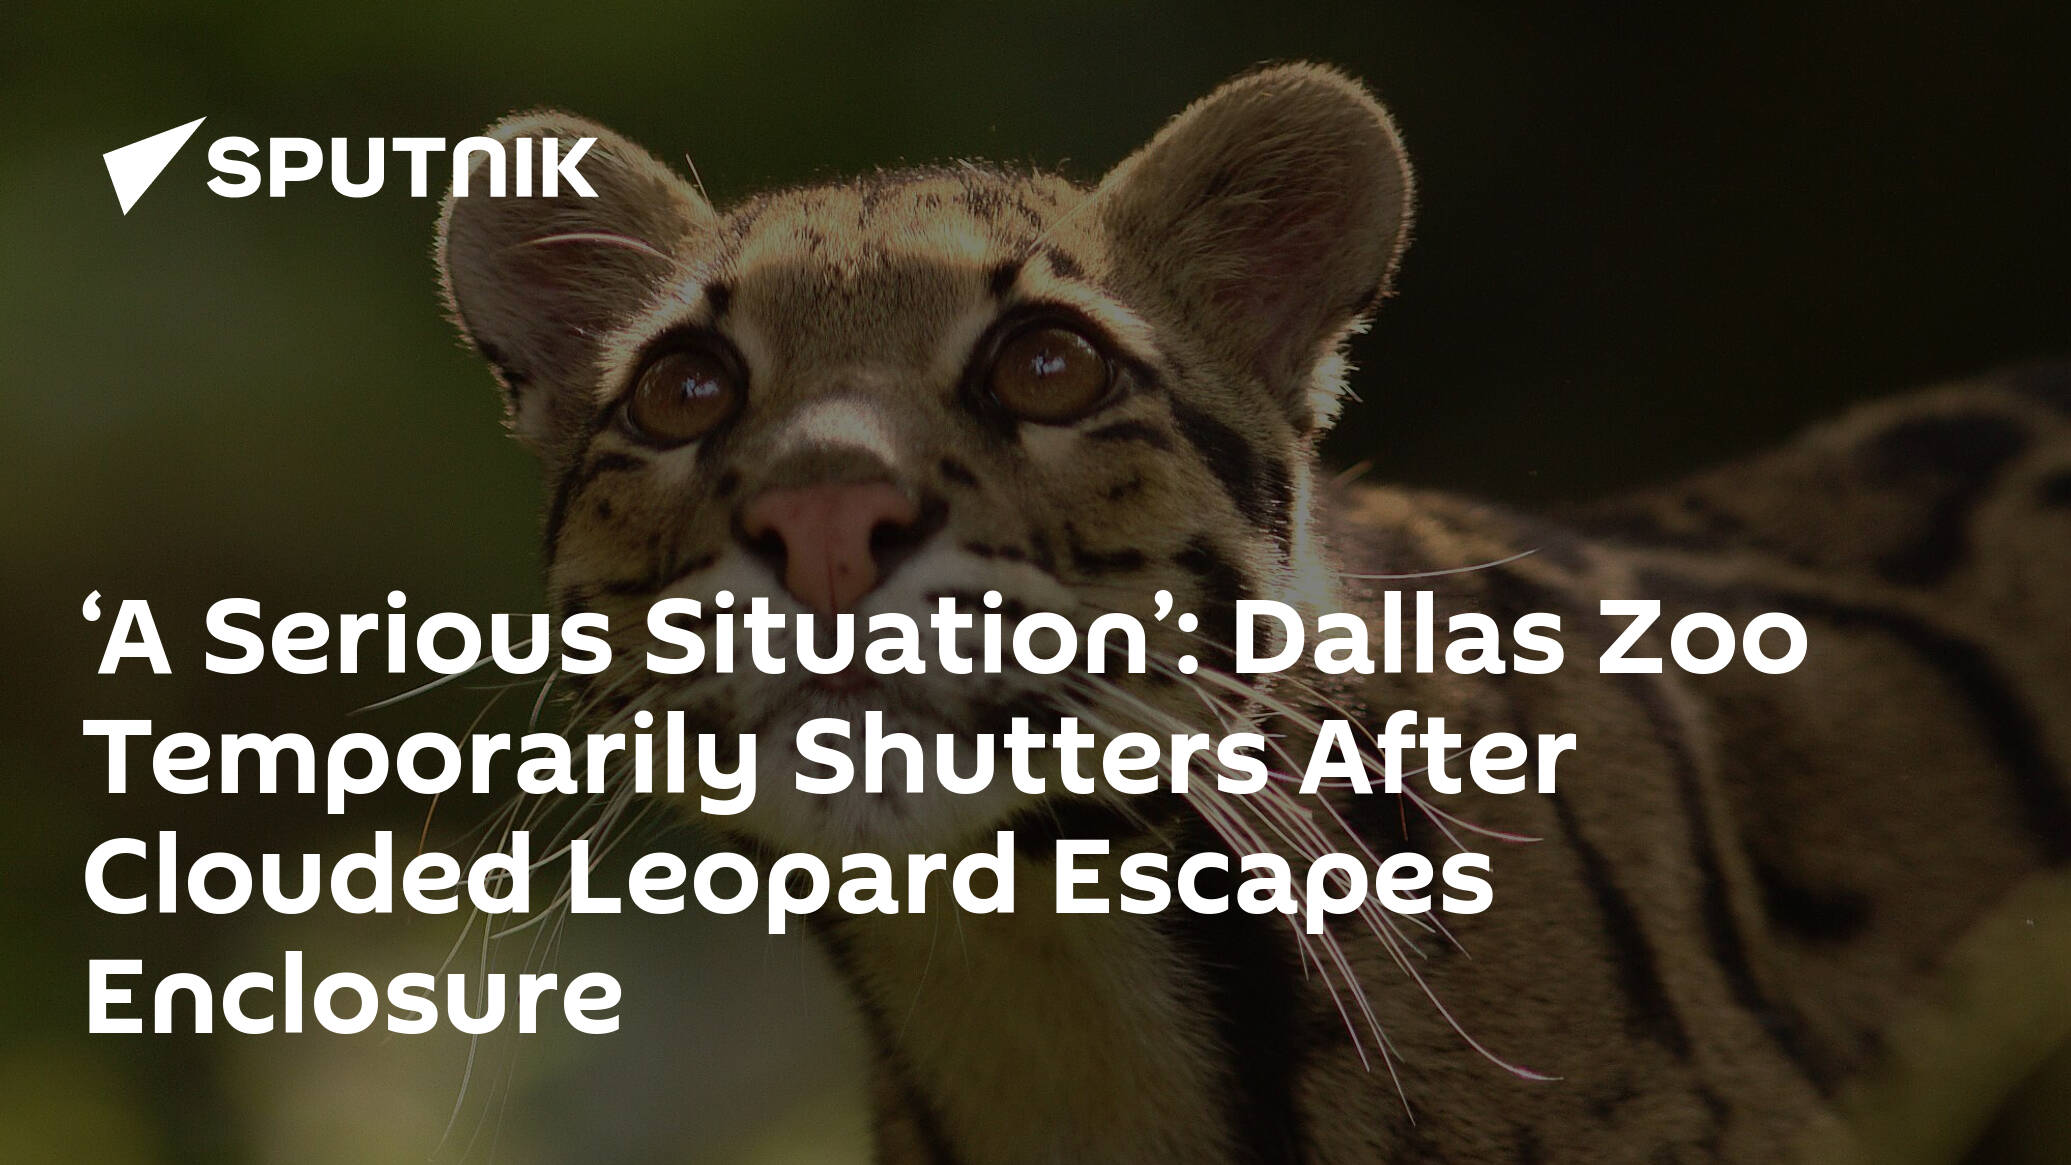 Dallas zoo closes after clouded leopard escapes its enclosure, Dallas